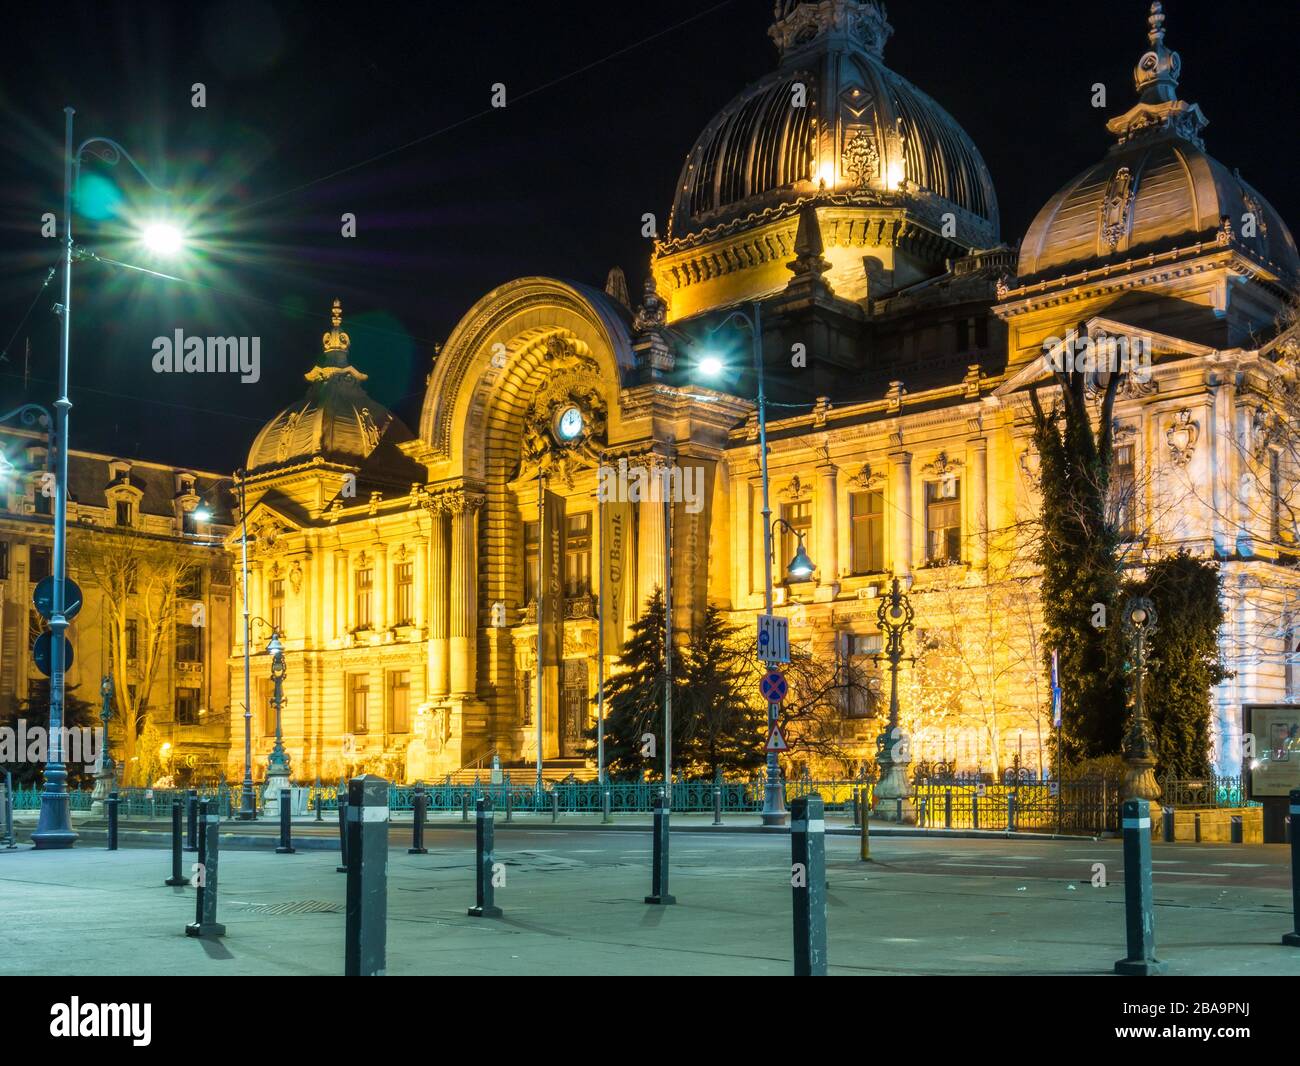 Bucarest/Rumania – 03.21.2020: Edificio del Palacio de los depósitos y remesas (CCA) por la noche. Arquitectura de un famoso edificio en Bucarest. Foto de stock